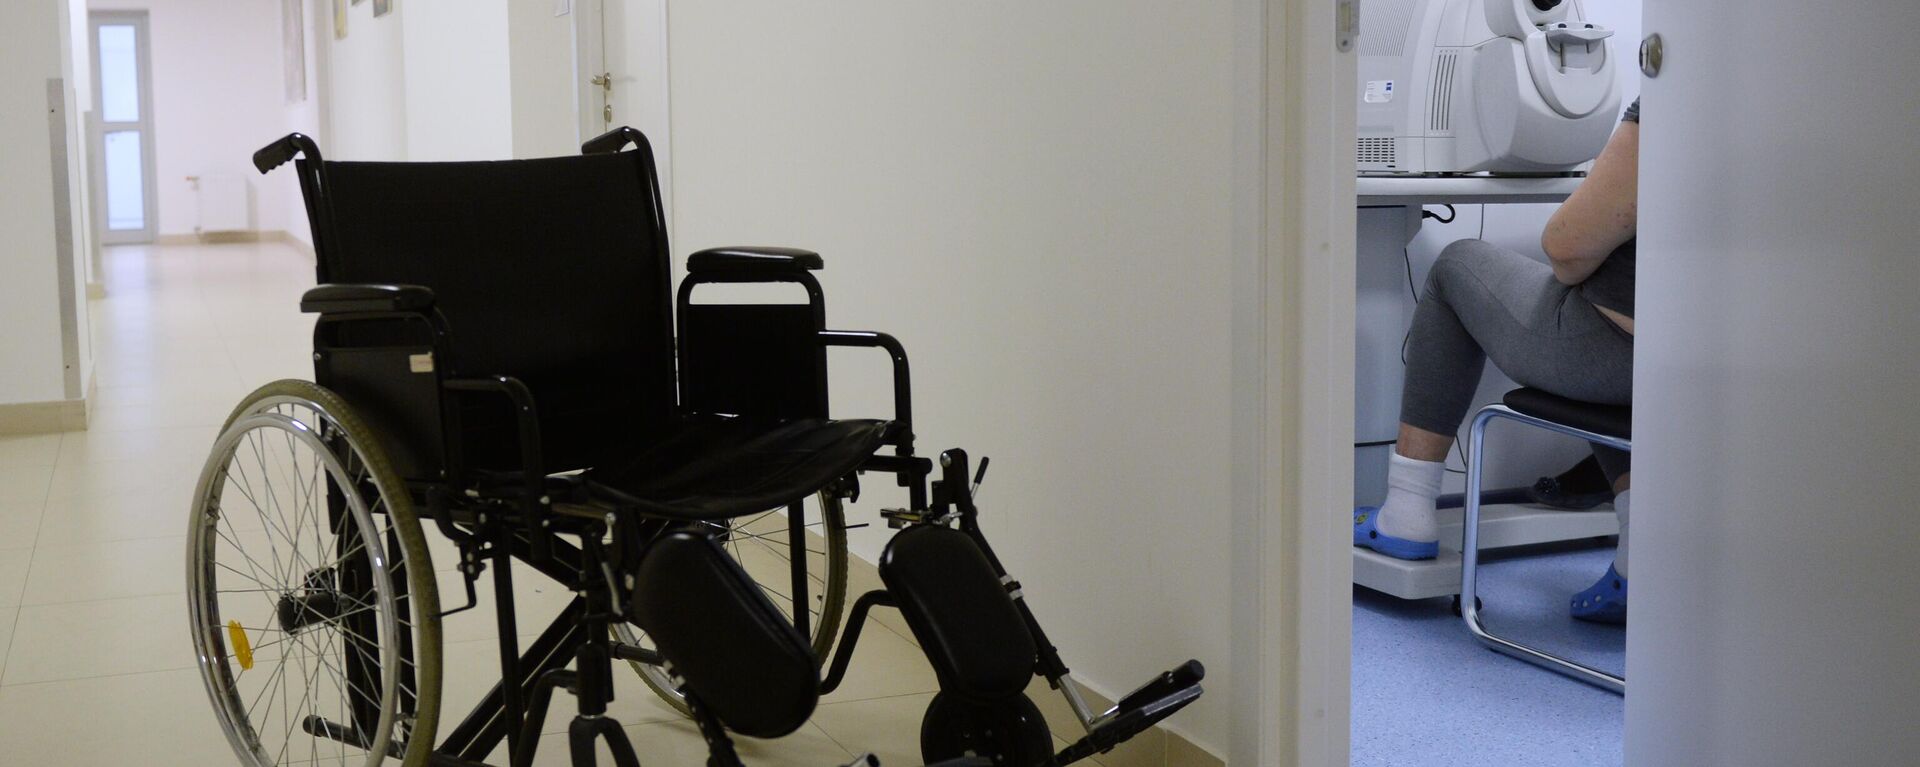 Инвалидная коляска в коридоре Института диабета ФГБУ НМИЦ эндокринологии - Sputnik Абхазия, 1920, 16.02.2022